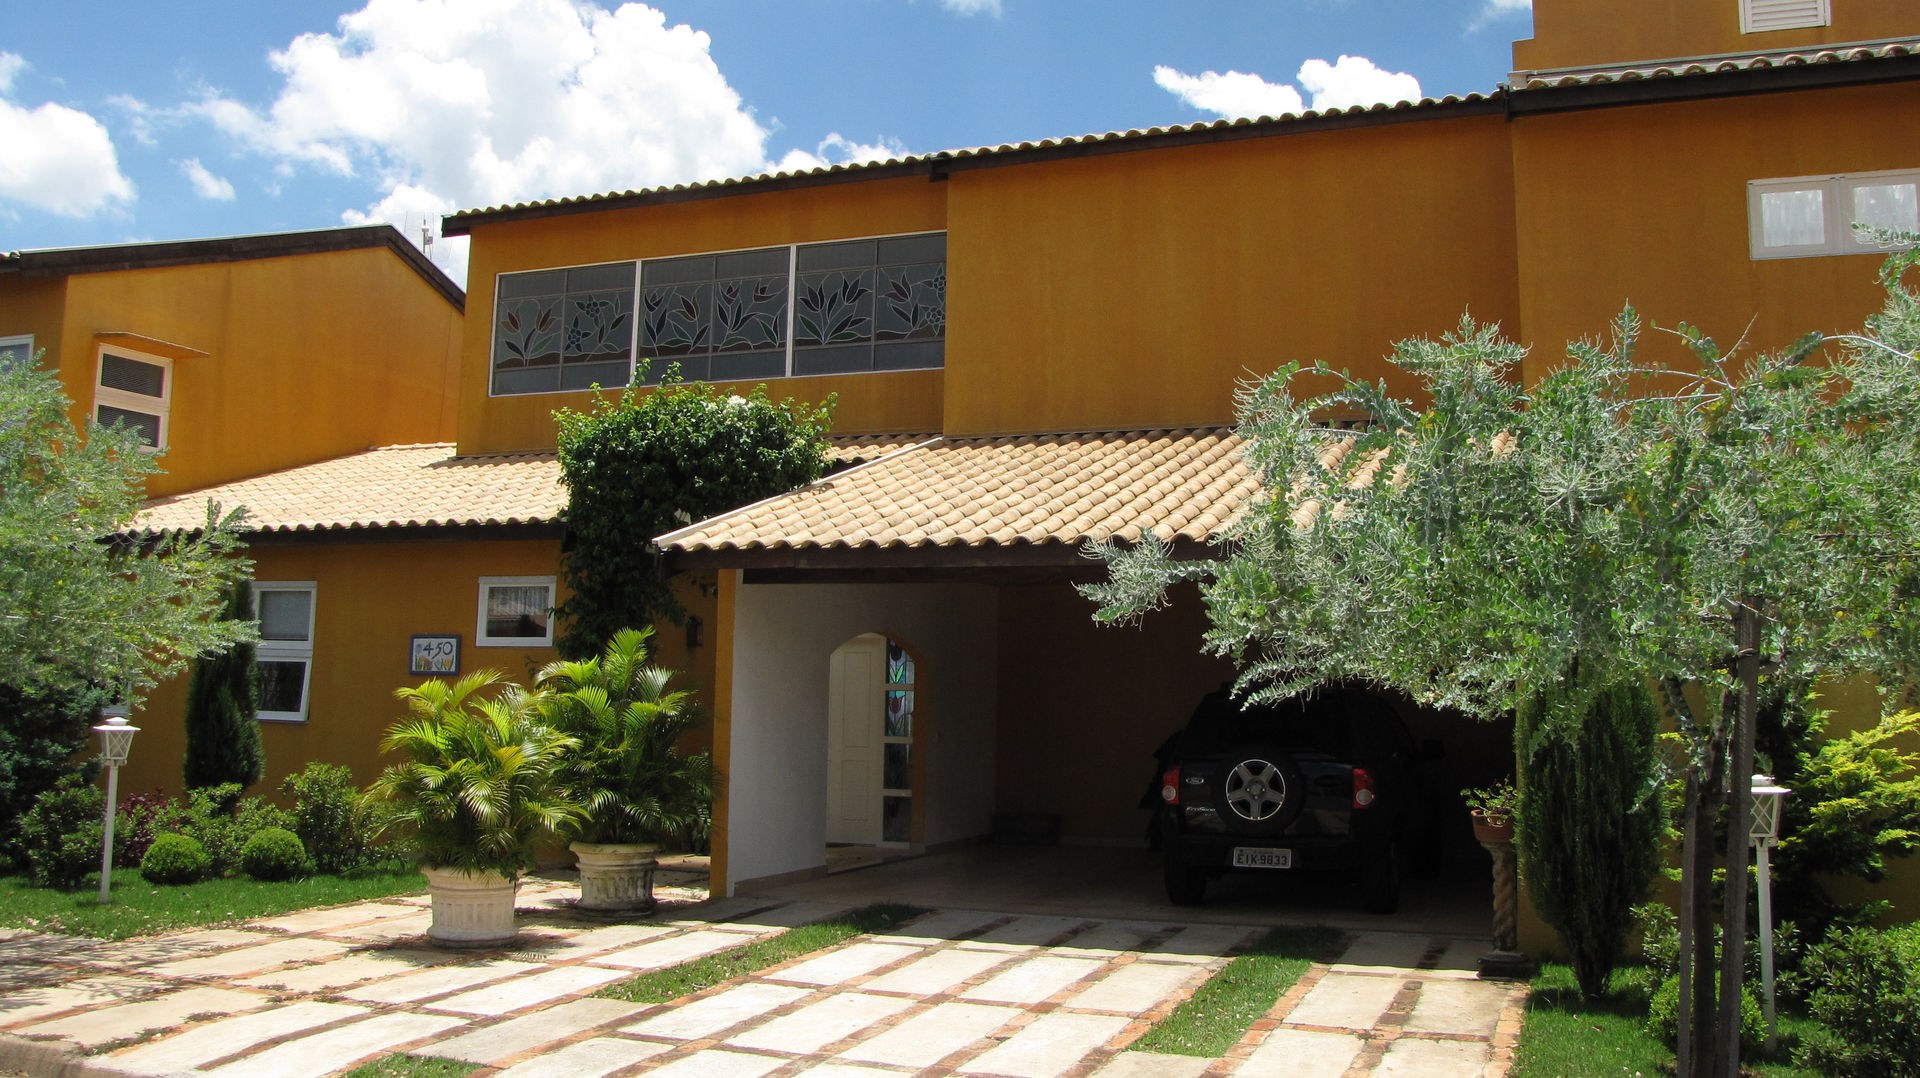 Residência em São Carlos, JMN arquitetura JMN arquitetura 排屋